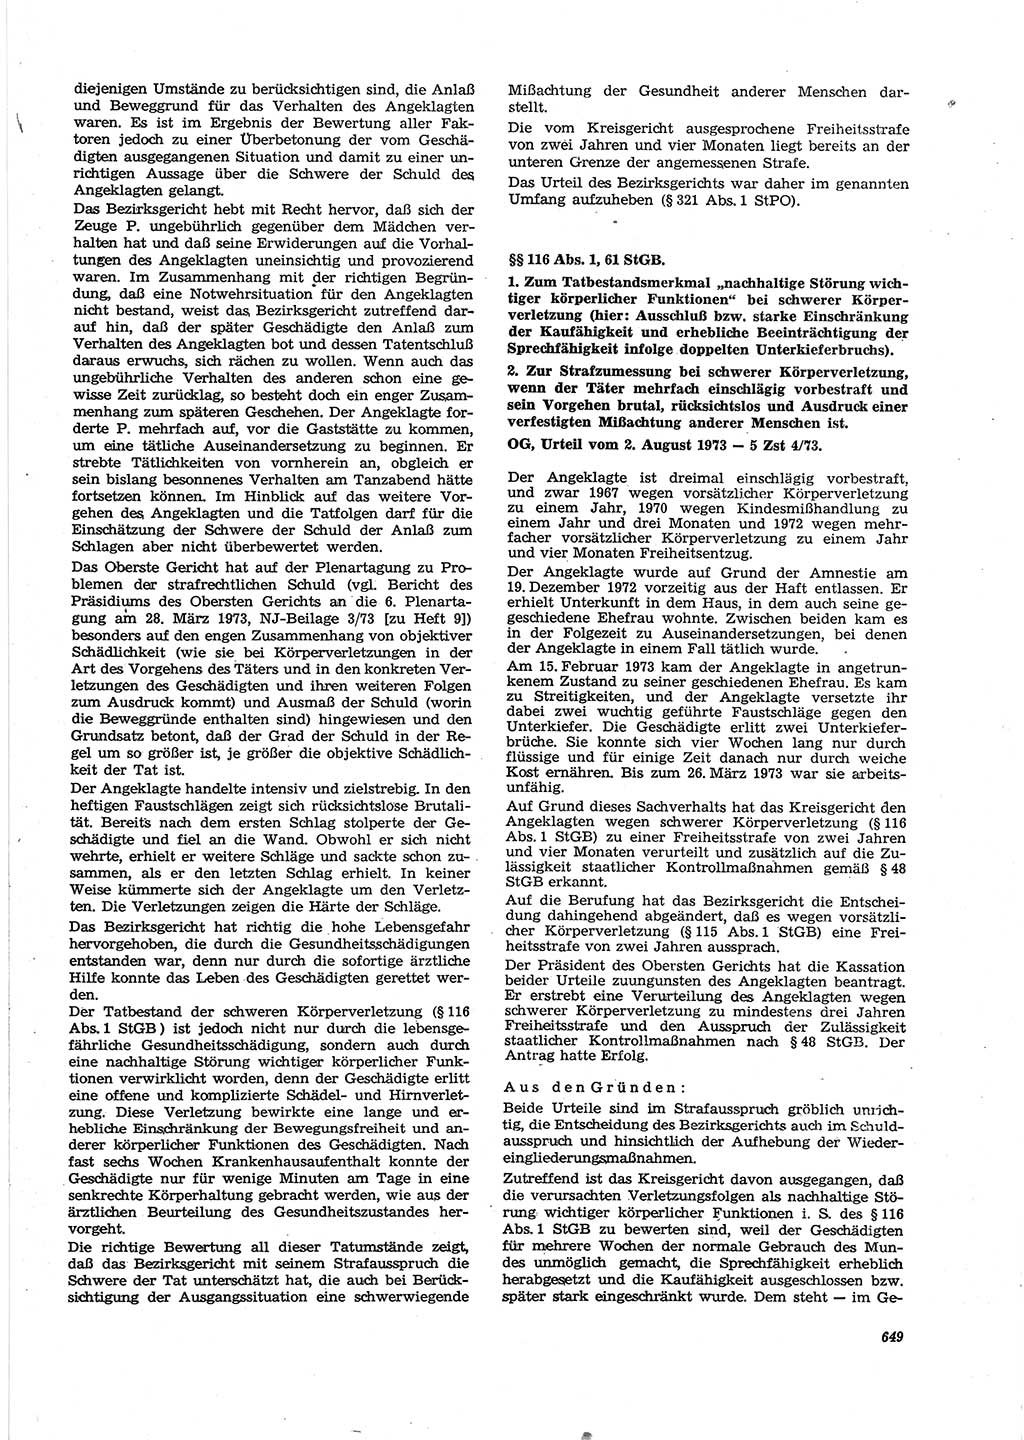 Neue Justiz (NJ), Zeitschrift für Recht und Rechtswissenschaft [Deutsche Demokratische Republik (DDR)], 27. Jahrgang 1973, Seite 649 (NJ DDR 1973, S. 649)